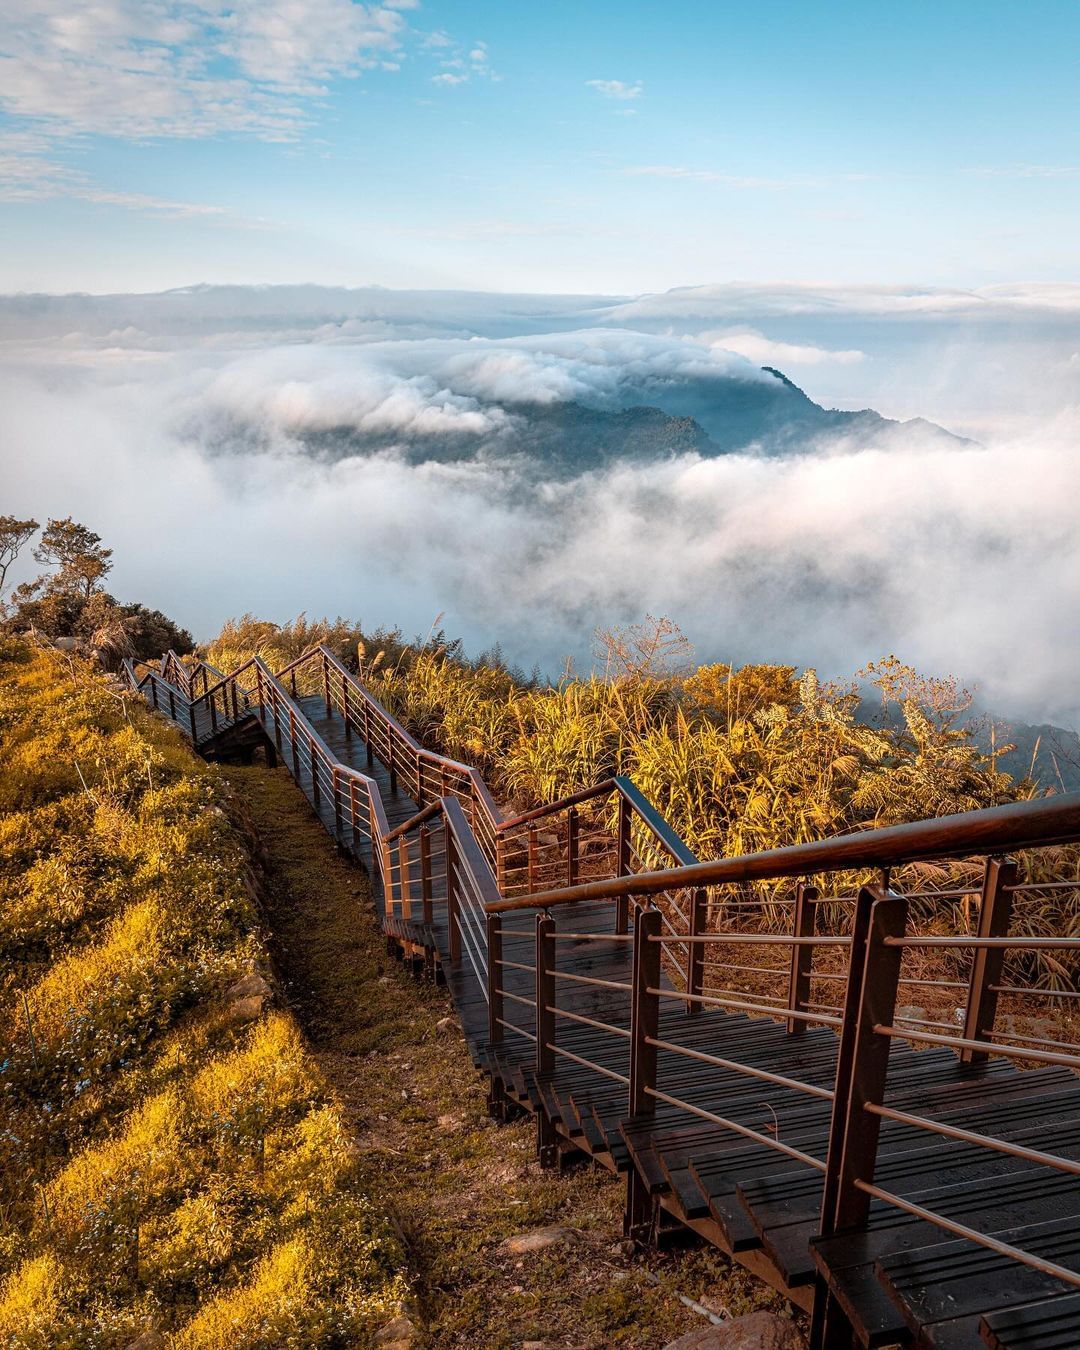 二延平步道海拔約1200-1450公尺，卻有高山風景的氣勢☁️⛰照片授權 @scencesss -⠀歡迎在您的貼文 #travel...